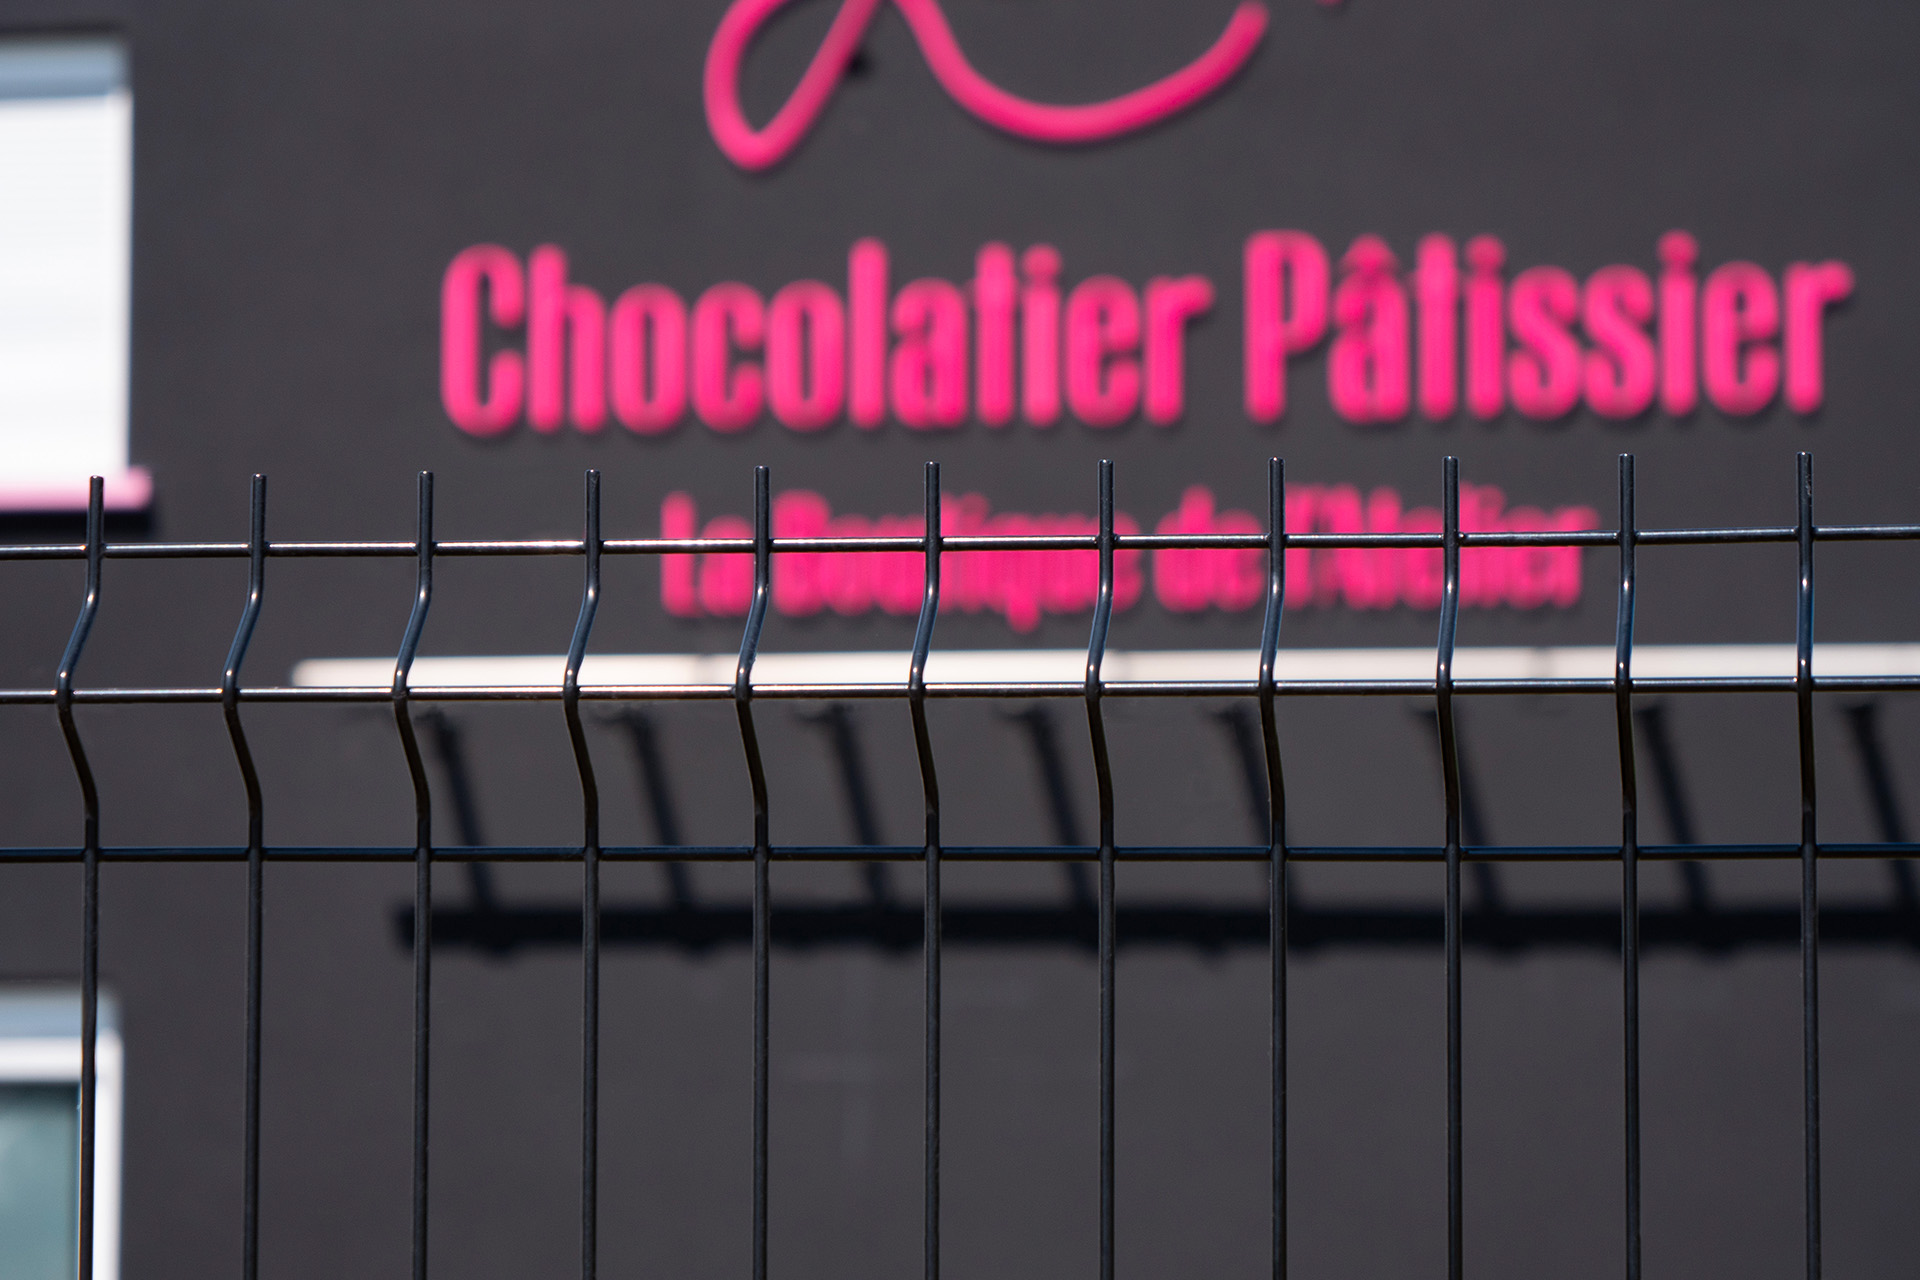 Sécurisation d'une chocolaterie avec portails autoportants manuels et grillage rigide